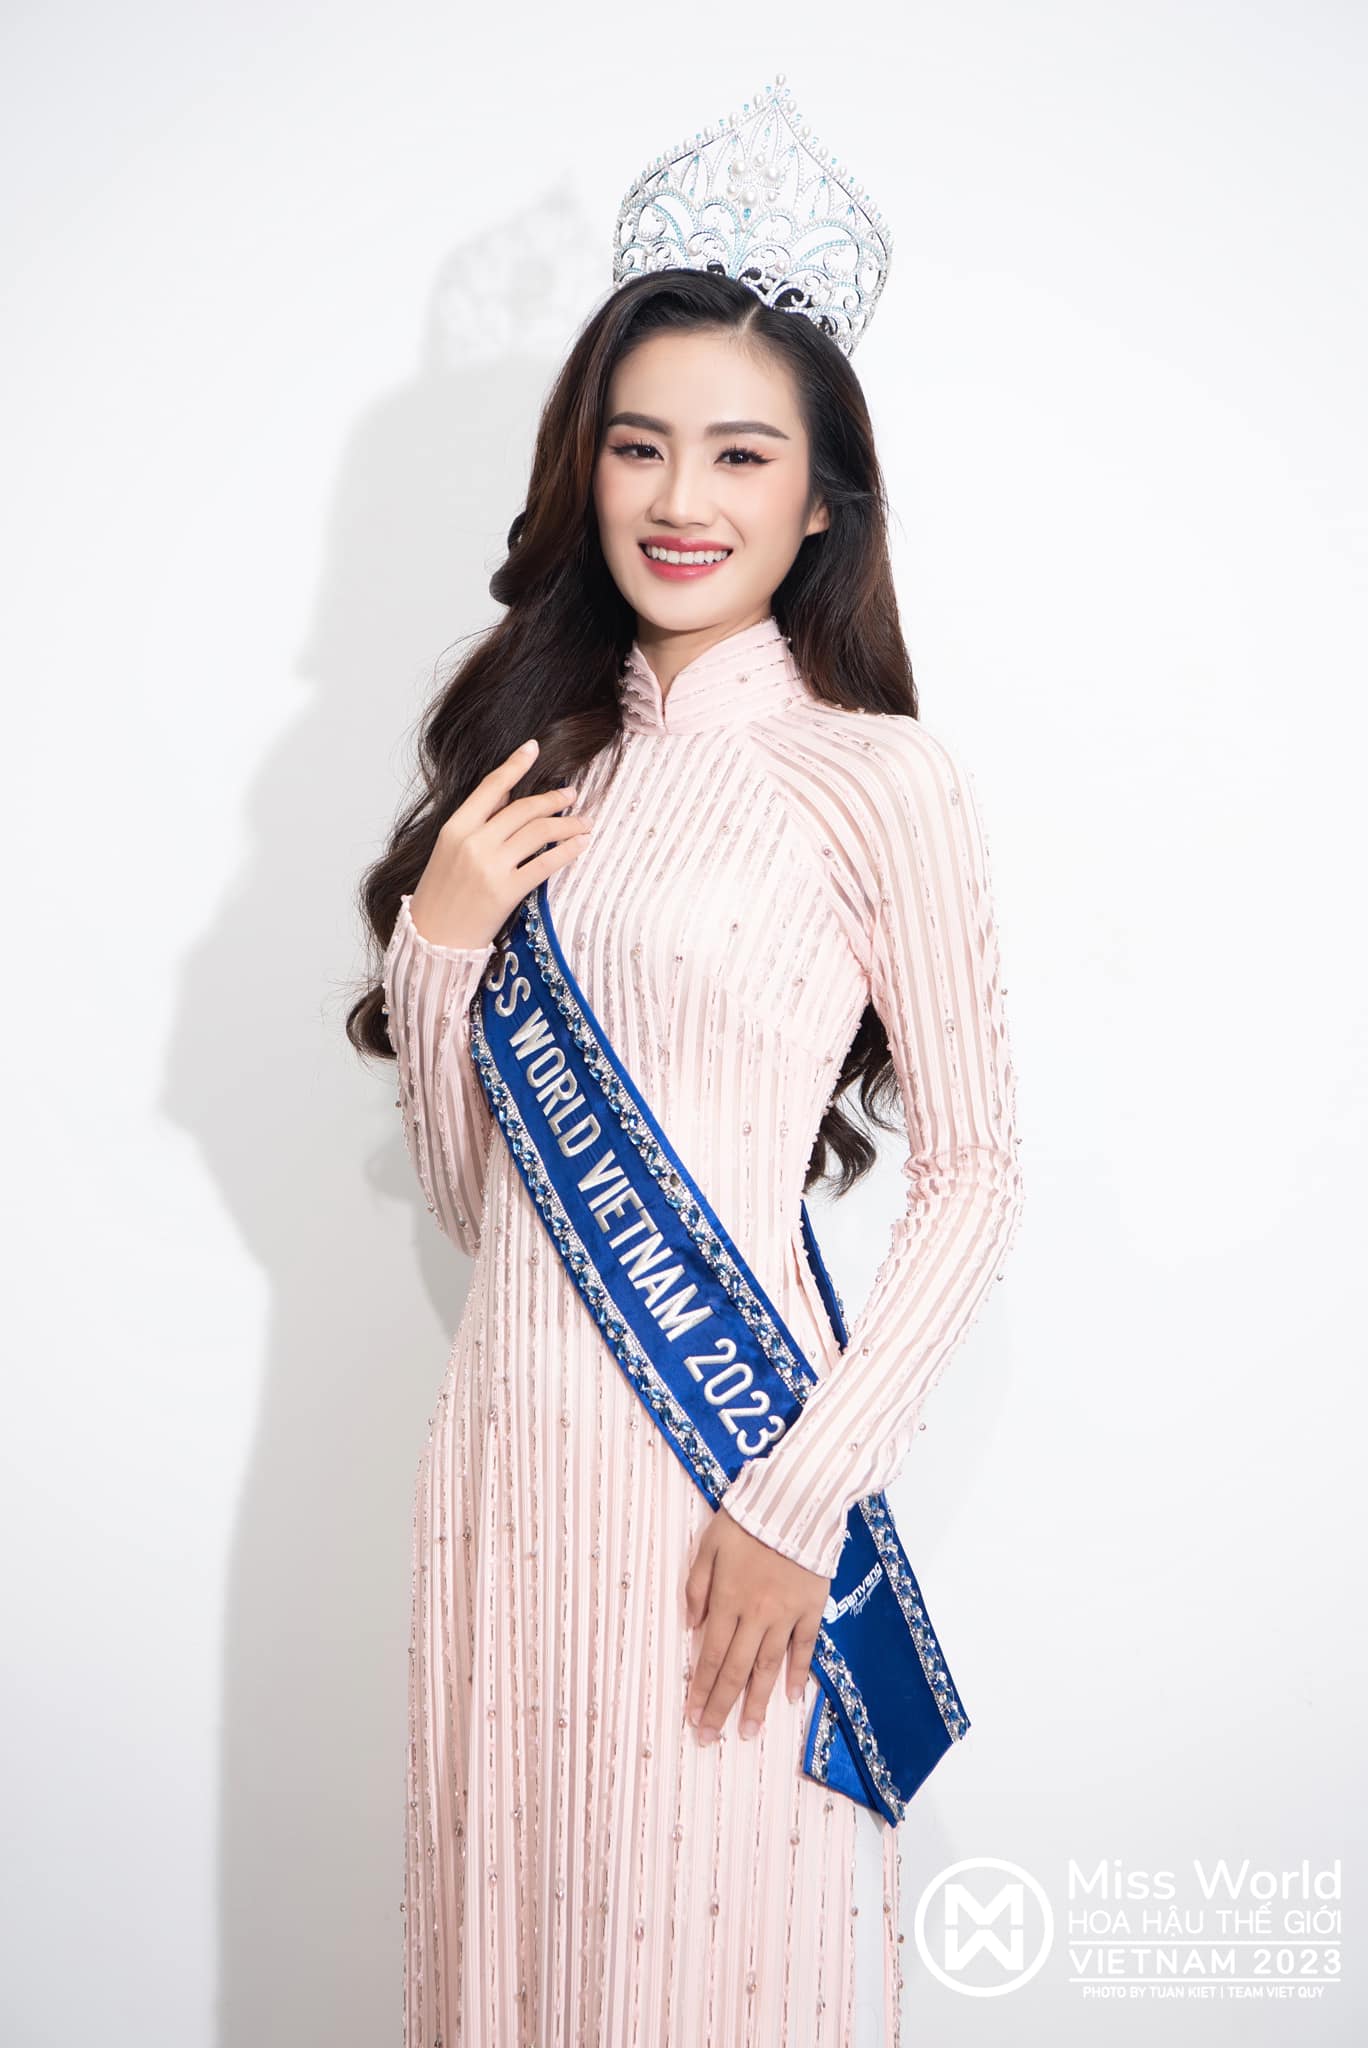 Kết quả buổi làm việc của Sở Văn hoá Thể thao Bình Định và BTC Miss World Vietnam về Ý Nhi ra sao? - ảnh 3